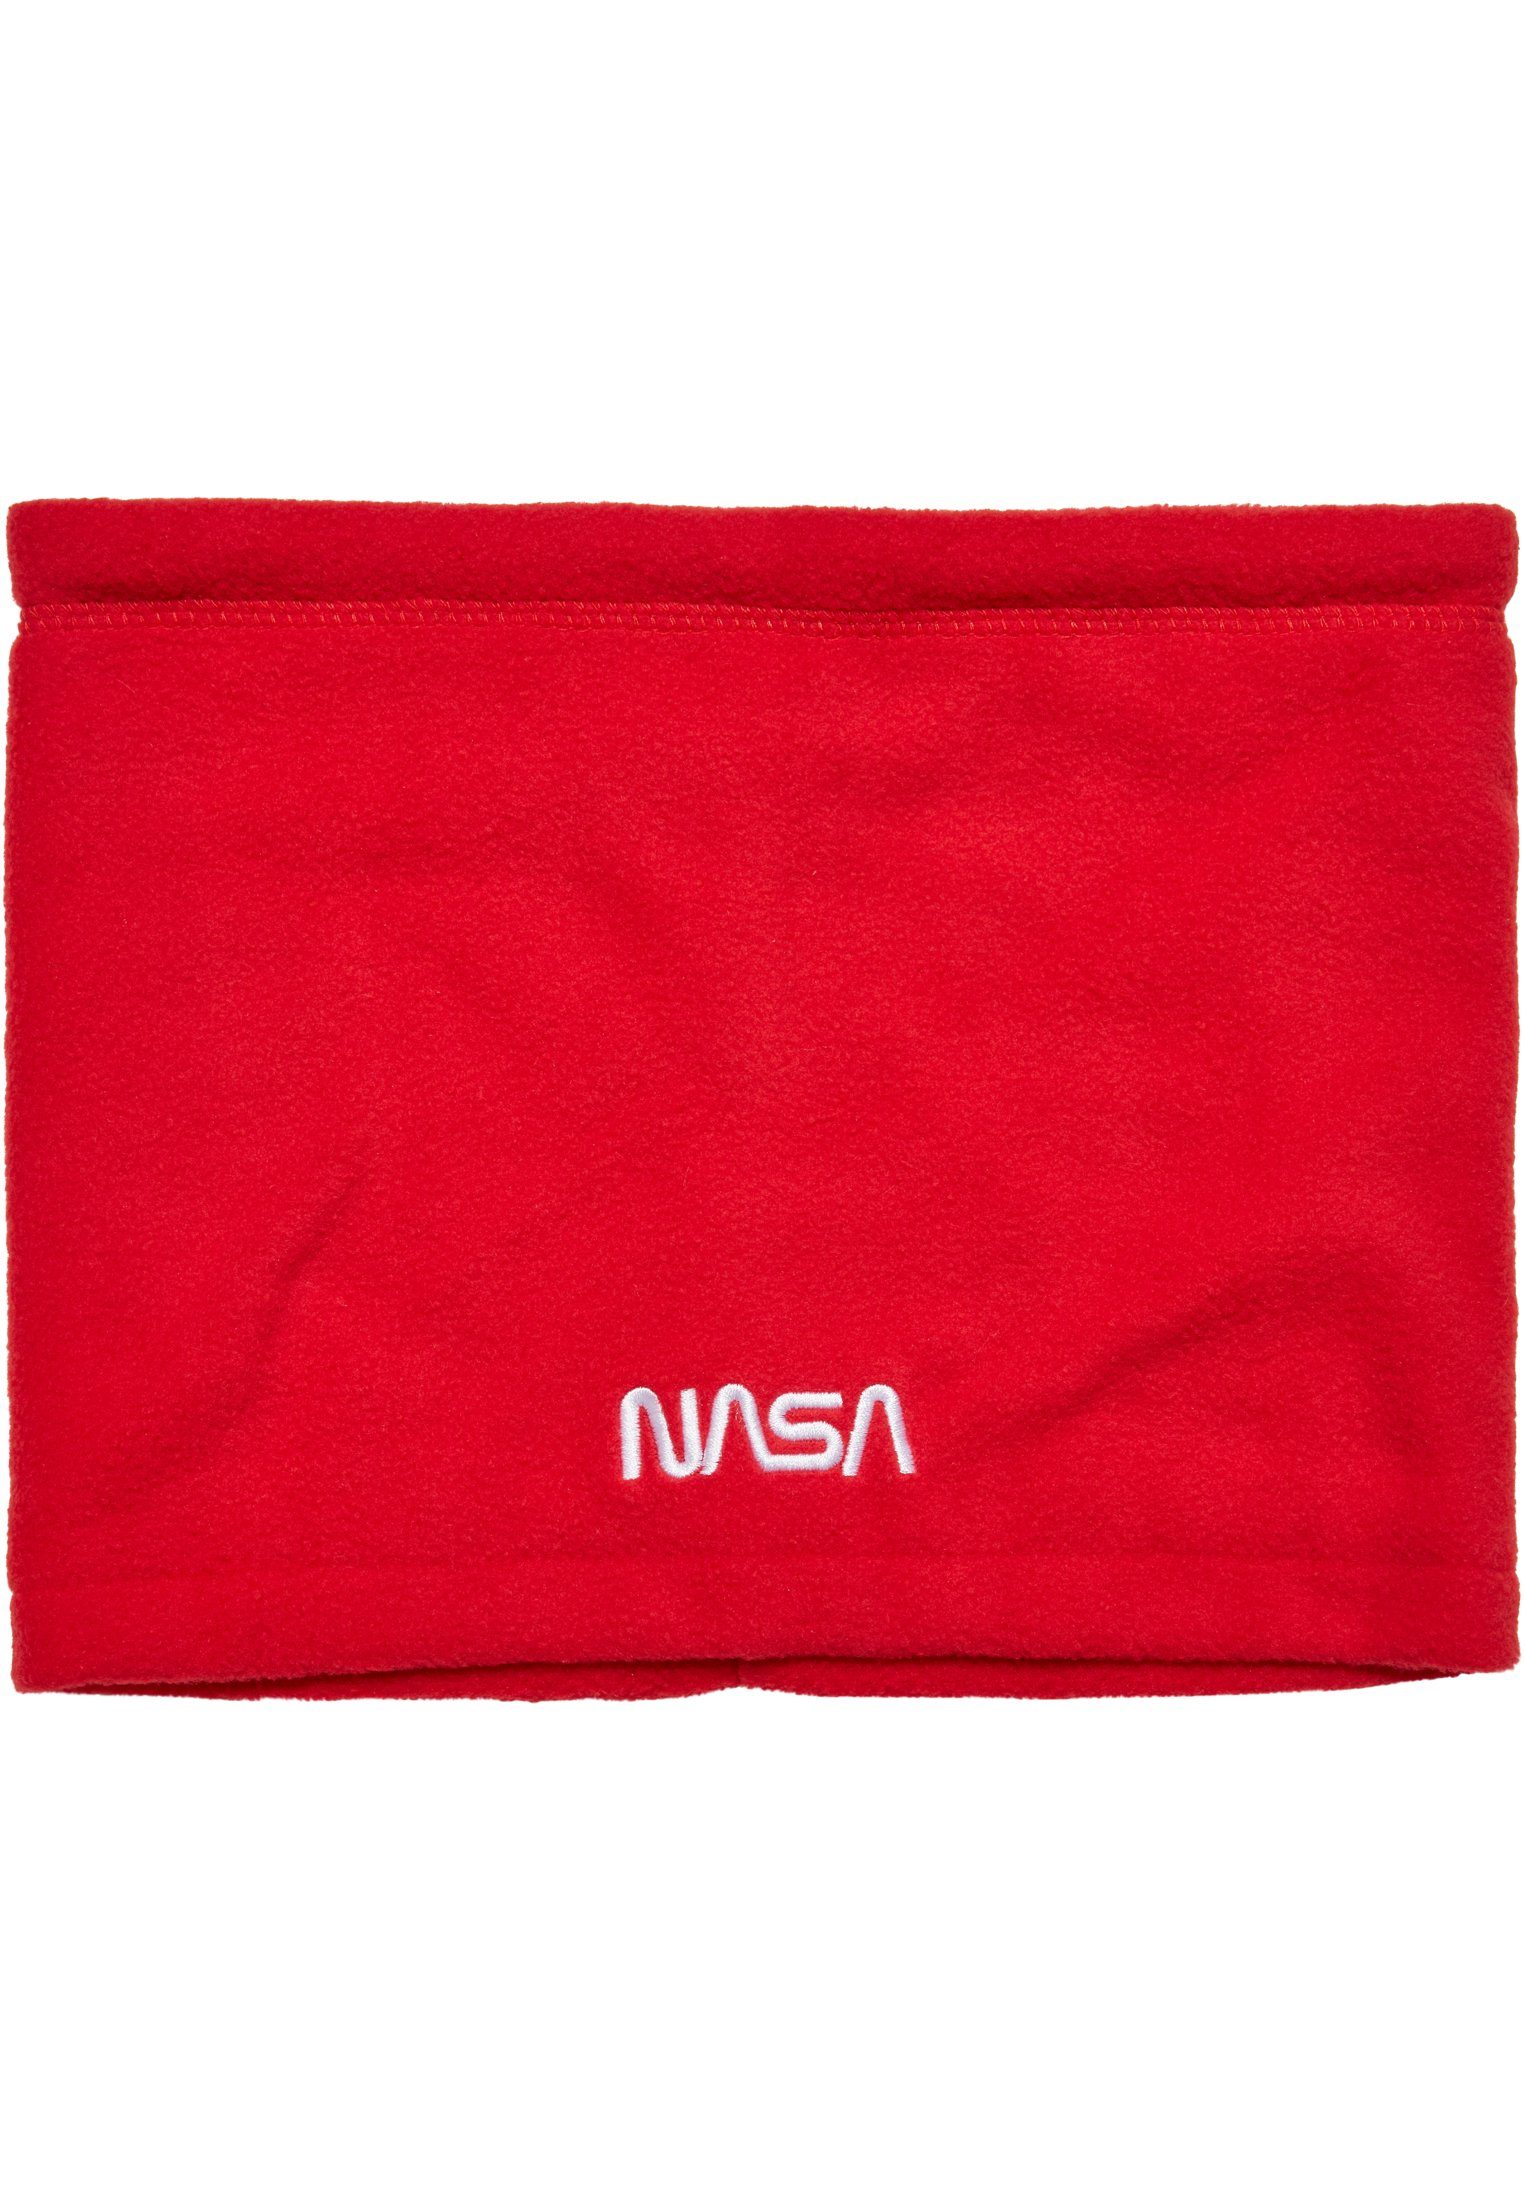 MisterTee Baumwollhandschuhe Accessoires Fleece NASA red Set